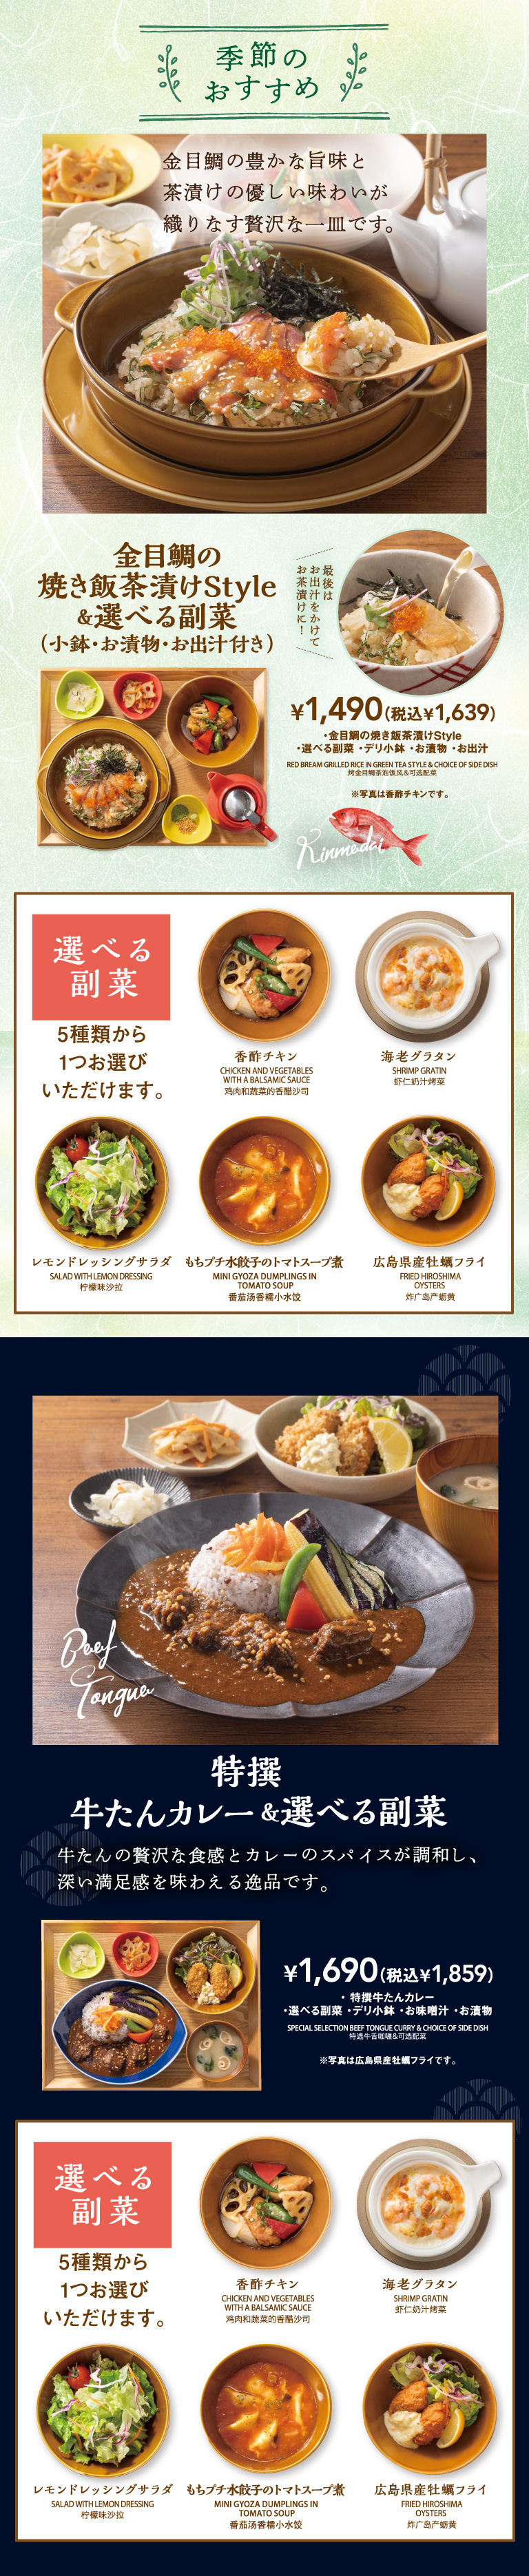 金目鯛魚炒飯炒飯style&可選擇的副菜最後澆上高湯做成茶泡飯